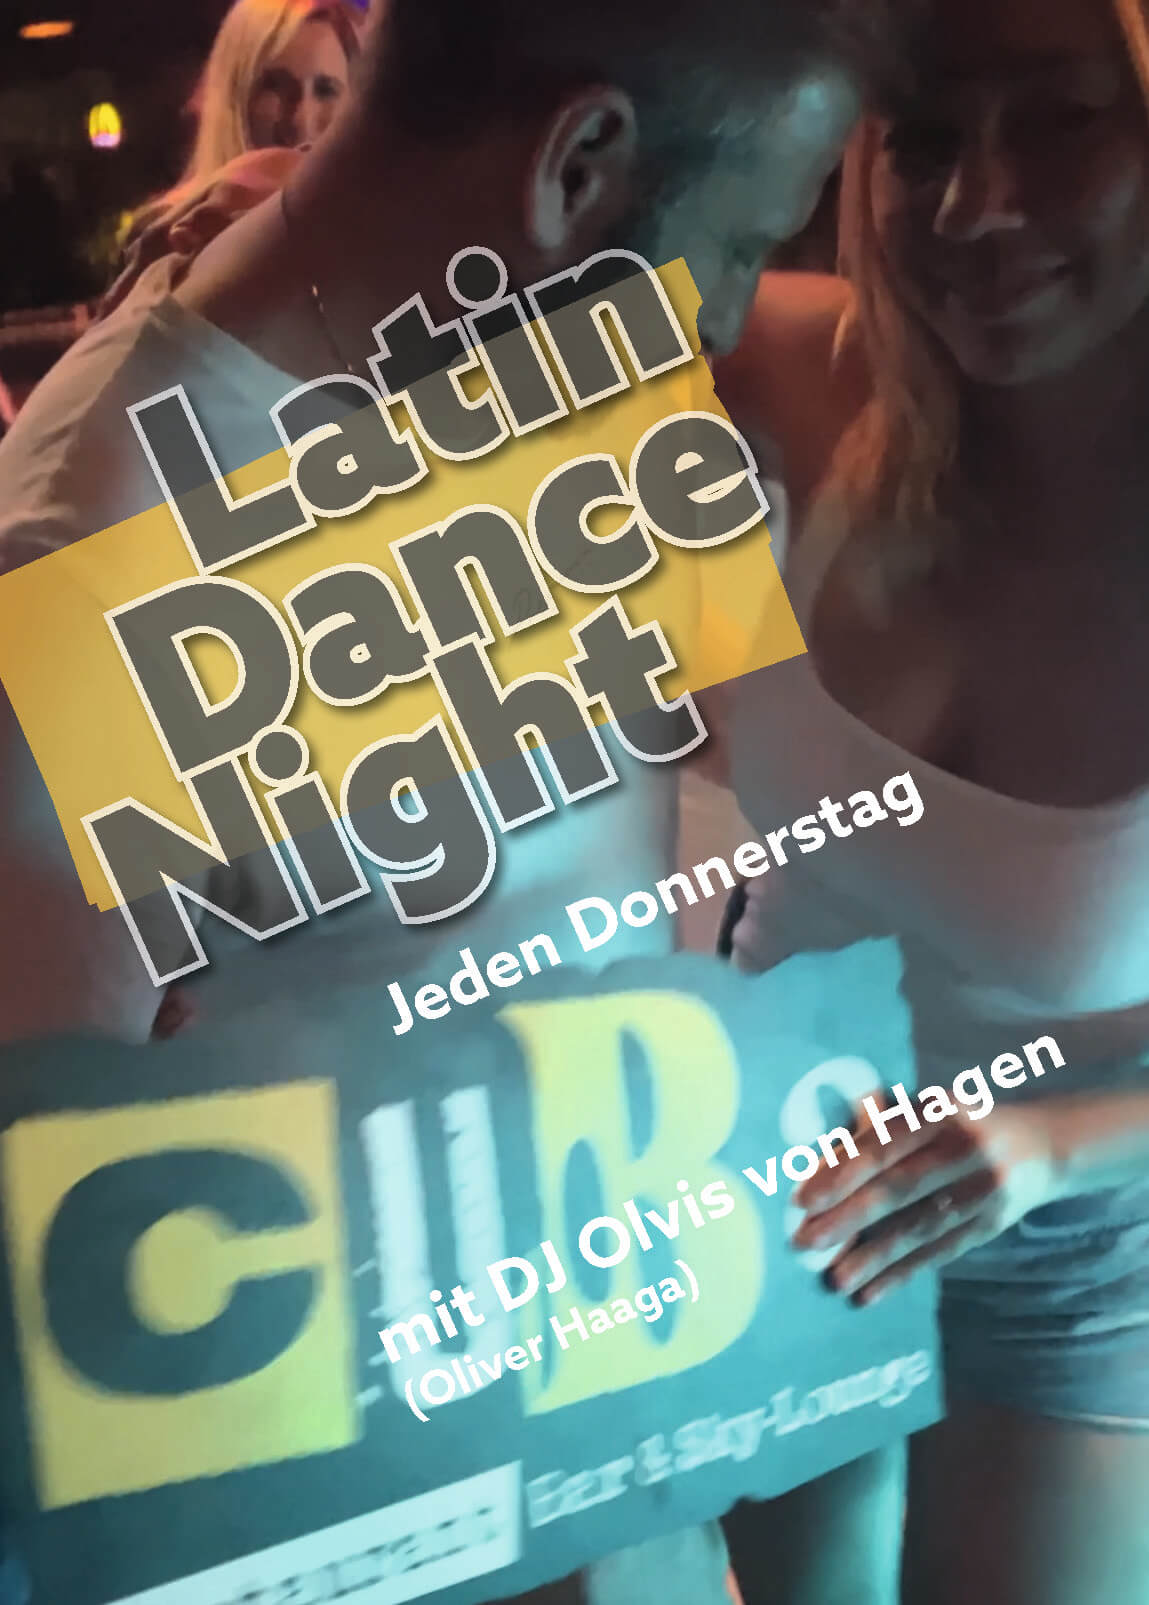 Latin Dance Night - Cuba Restaurant Bar & Skylounge 